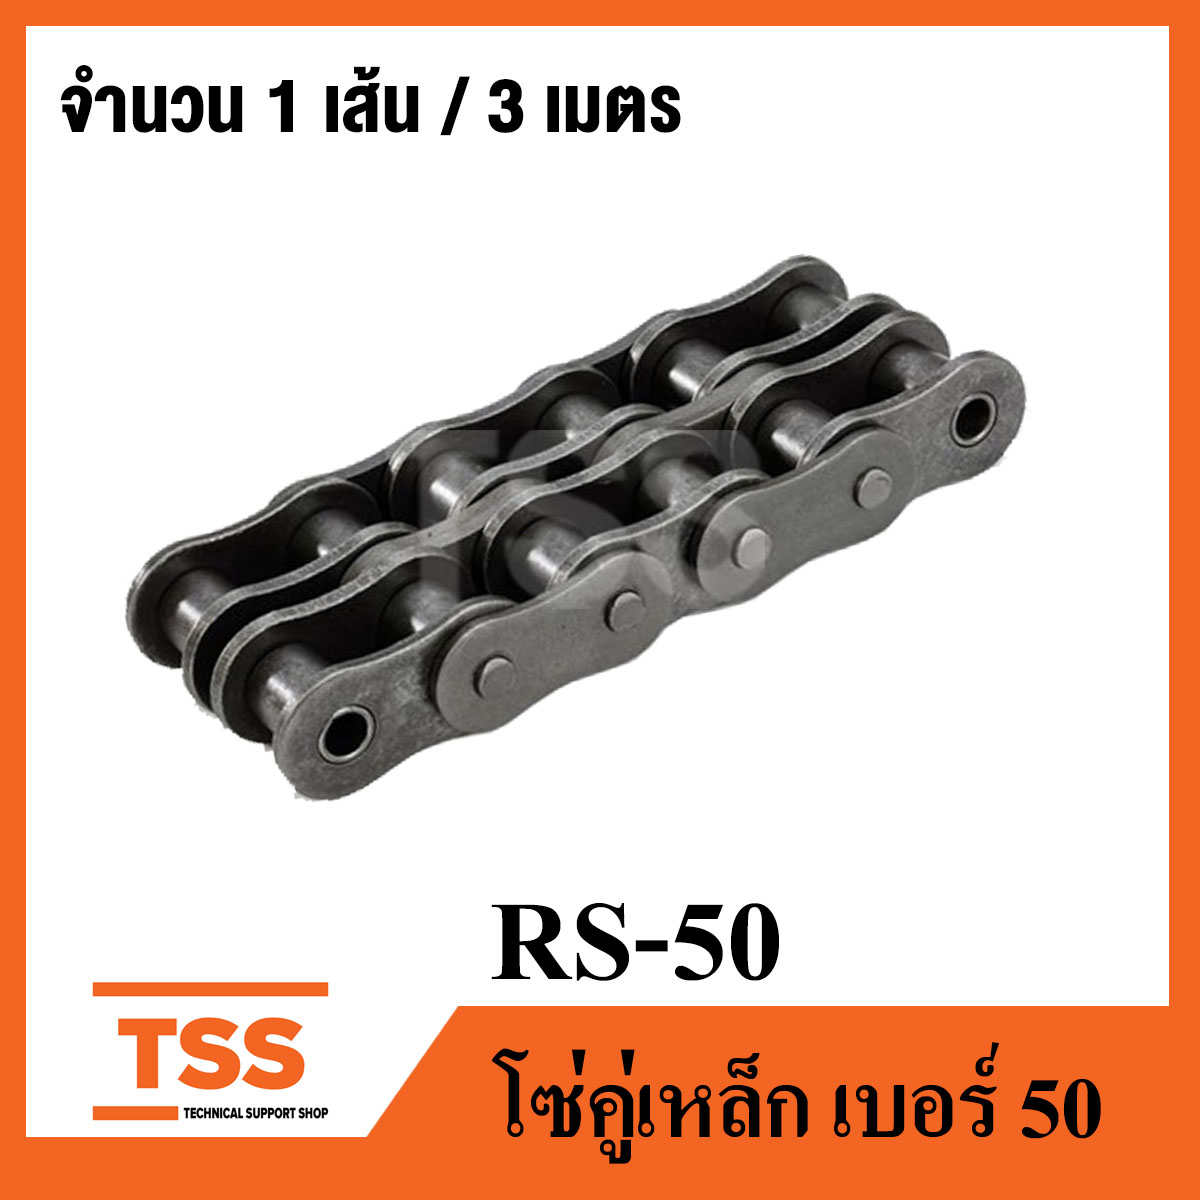 RS50 โซ่คู่ ส่งกำลัง เบอร์ 50 ( Transmission Roller chain ) ( 3 เมตร / 1 กล่อง ) โซ่อุตสาหกรรม เบอร์ 50